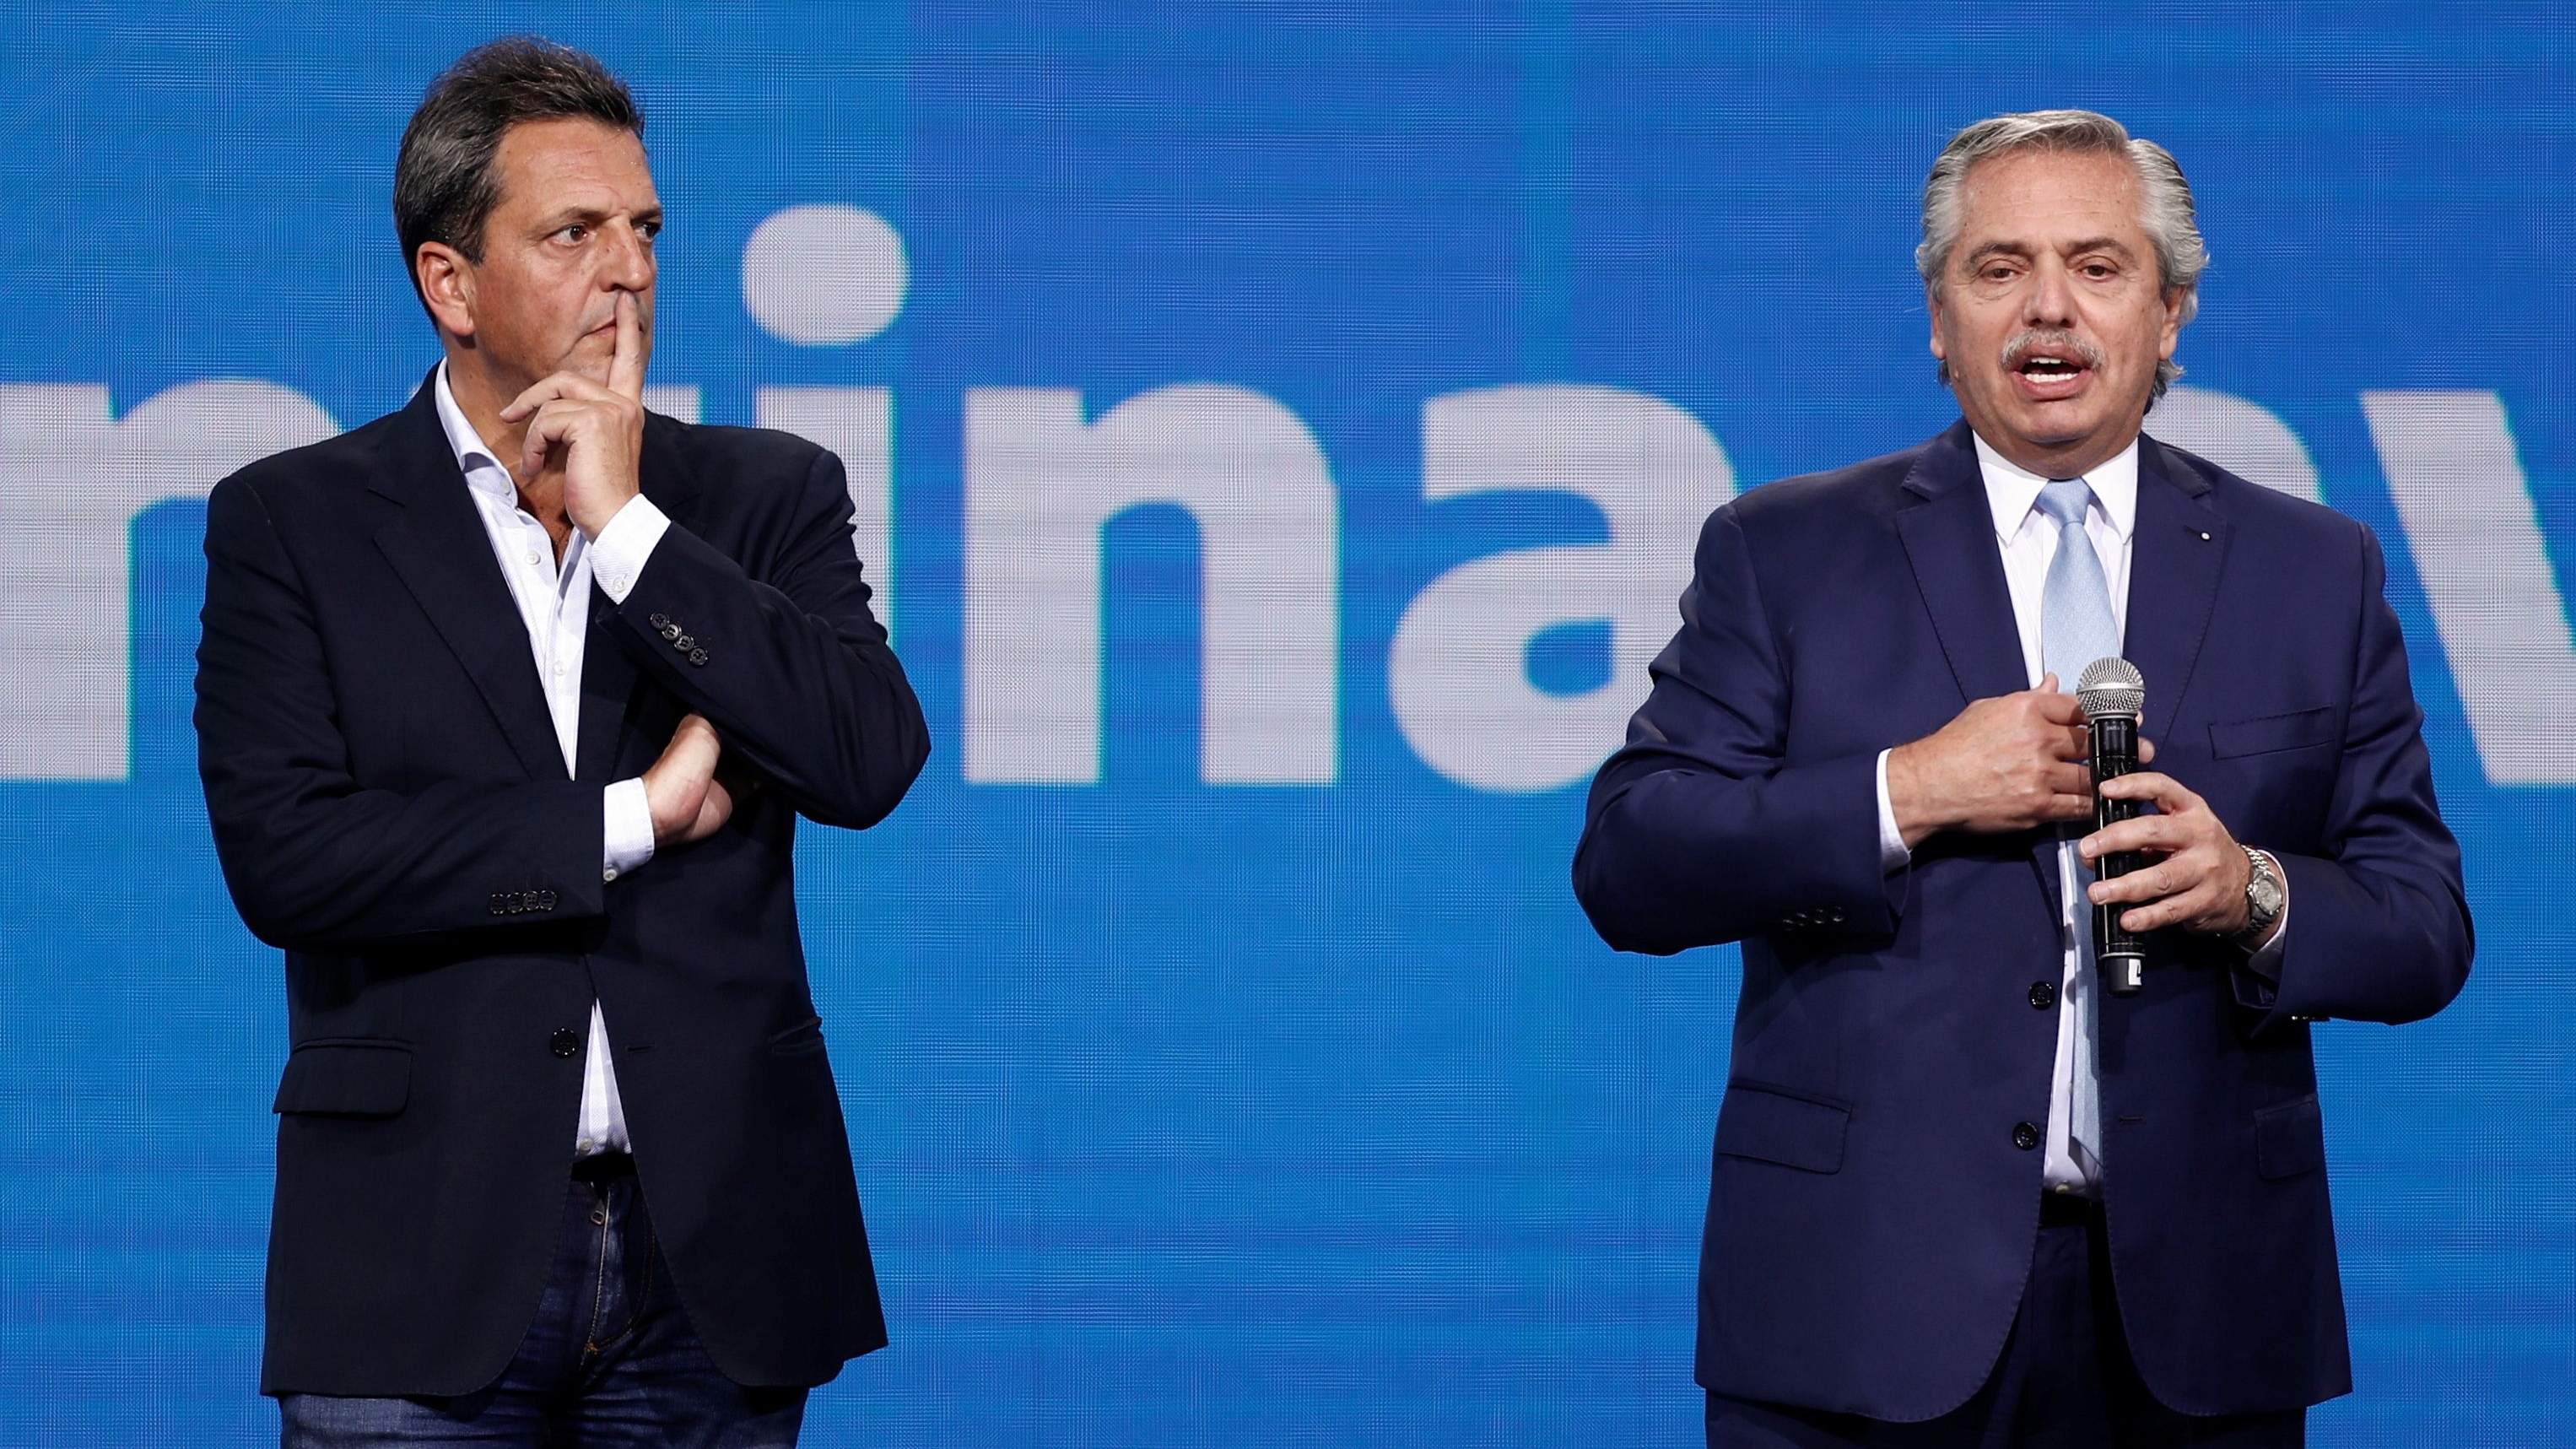 El ministro de Economía, Sergio Massa, y el presidente Alberto Fernández. (Foto: REUTERS/Agustin Marcarian)